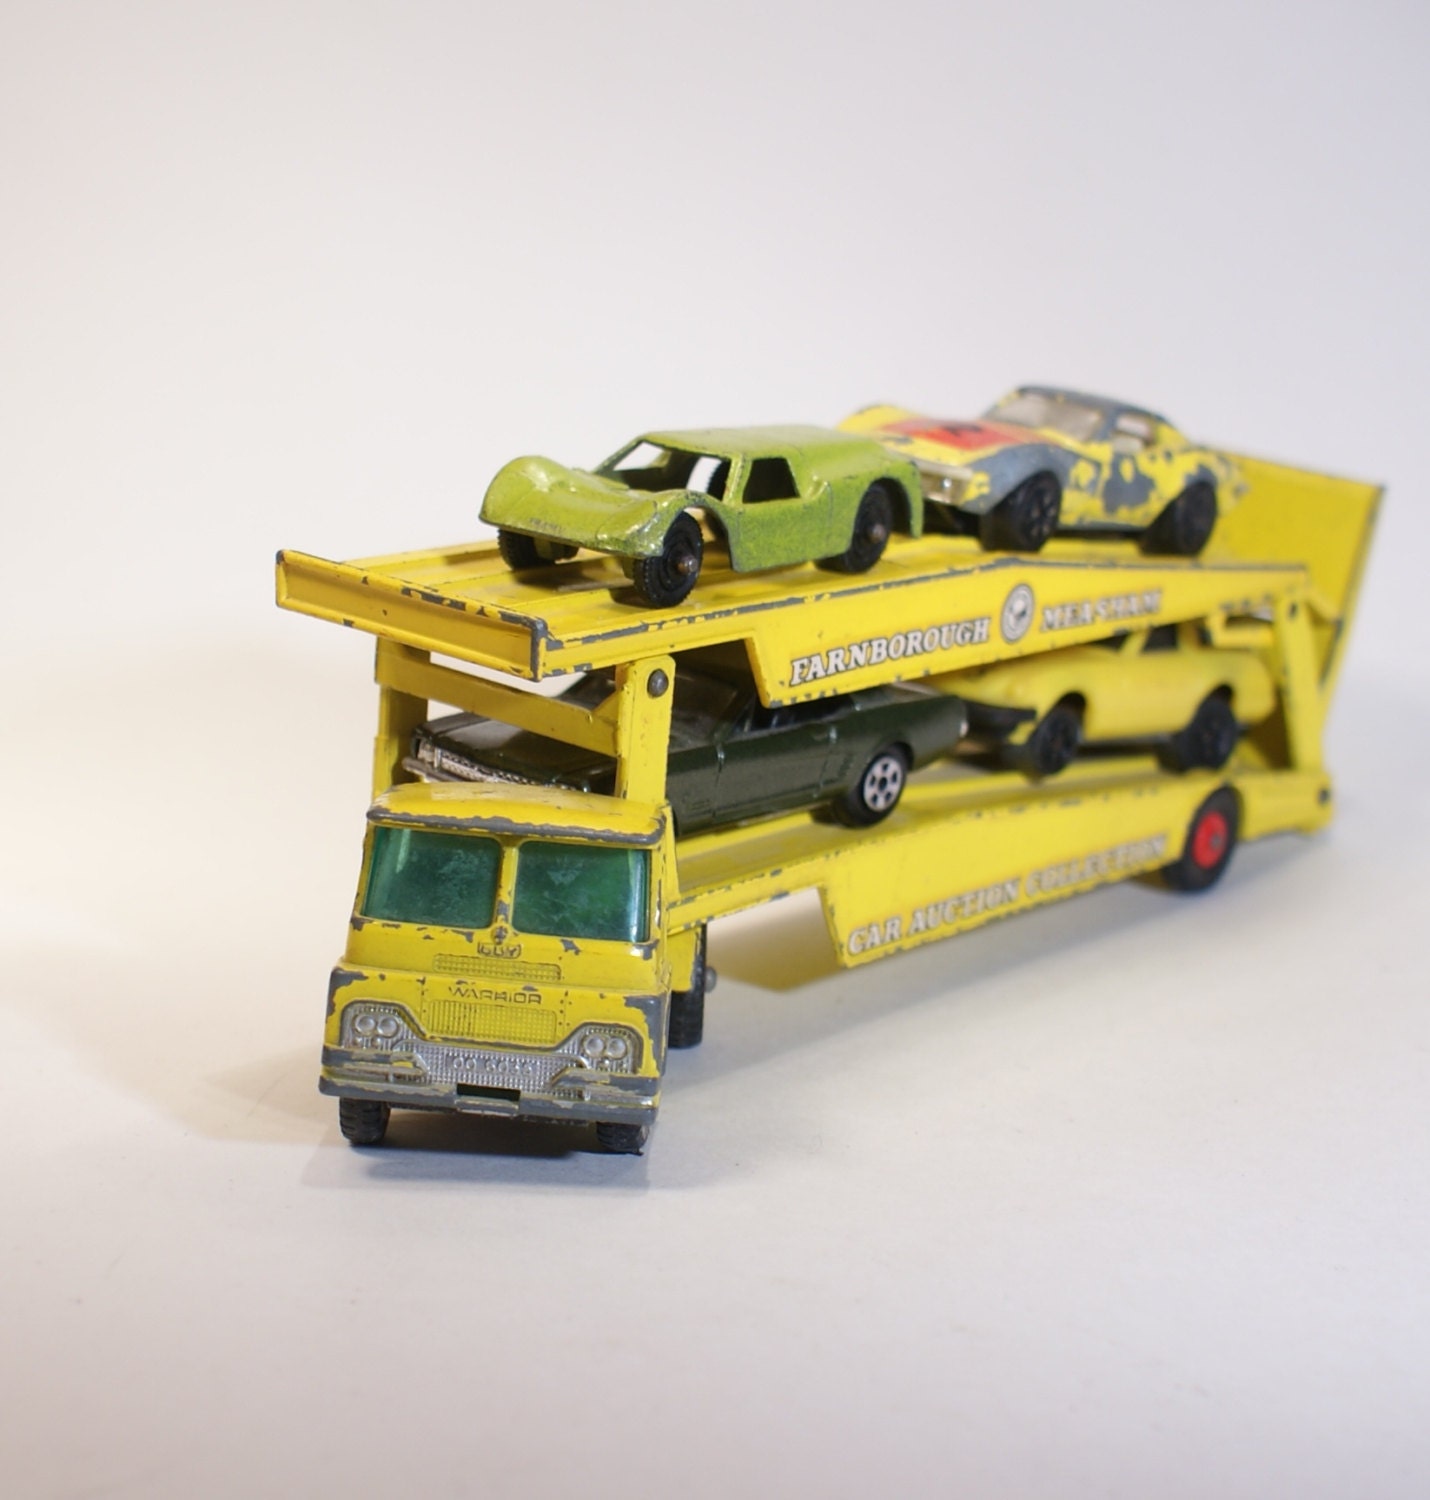 Vintage Toys Toy Cars Matchbox Guy Warrior Car Transporter